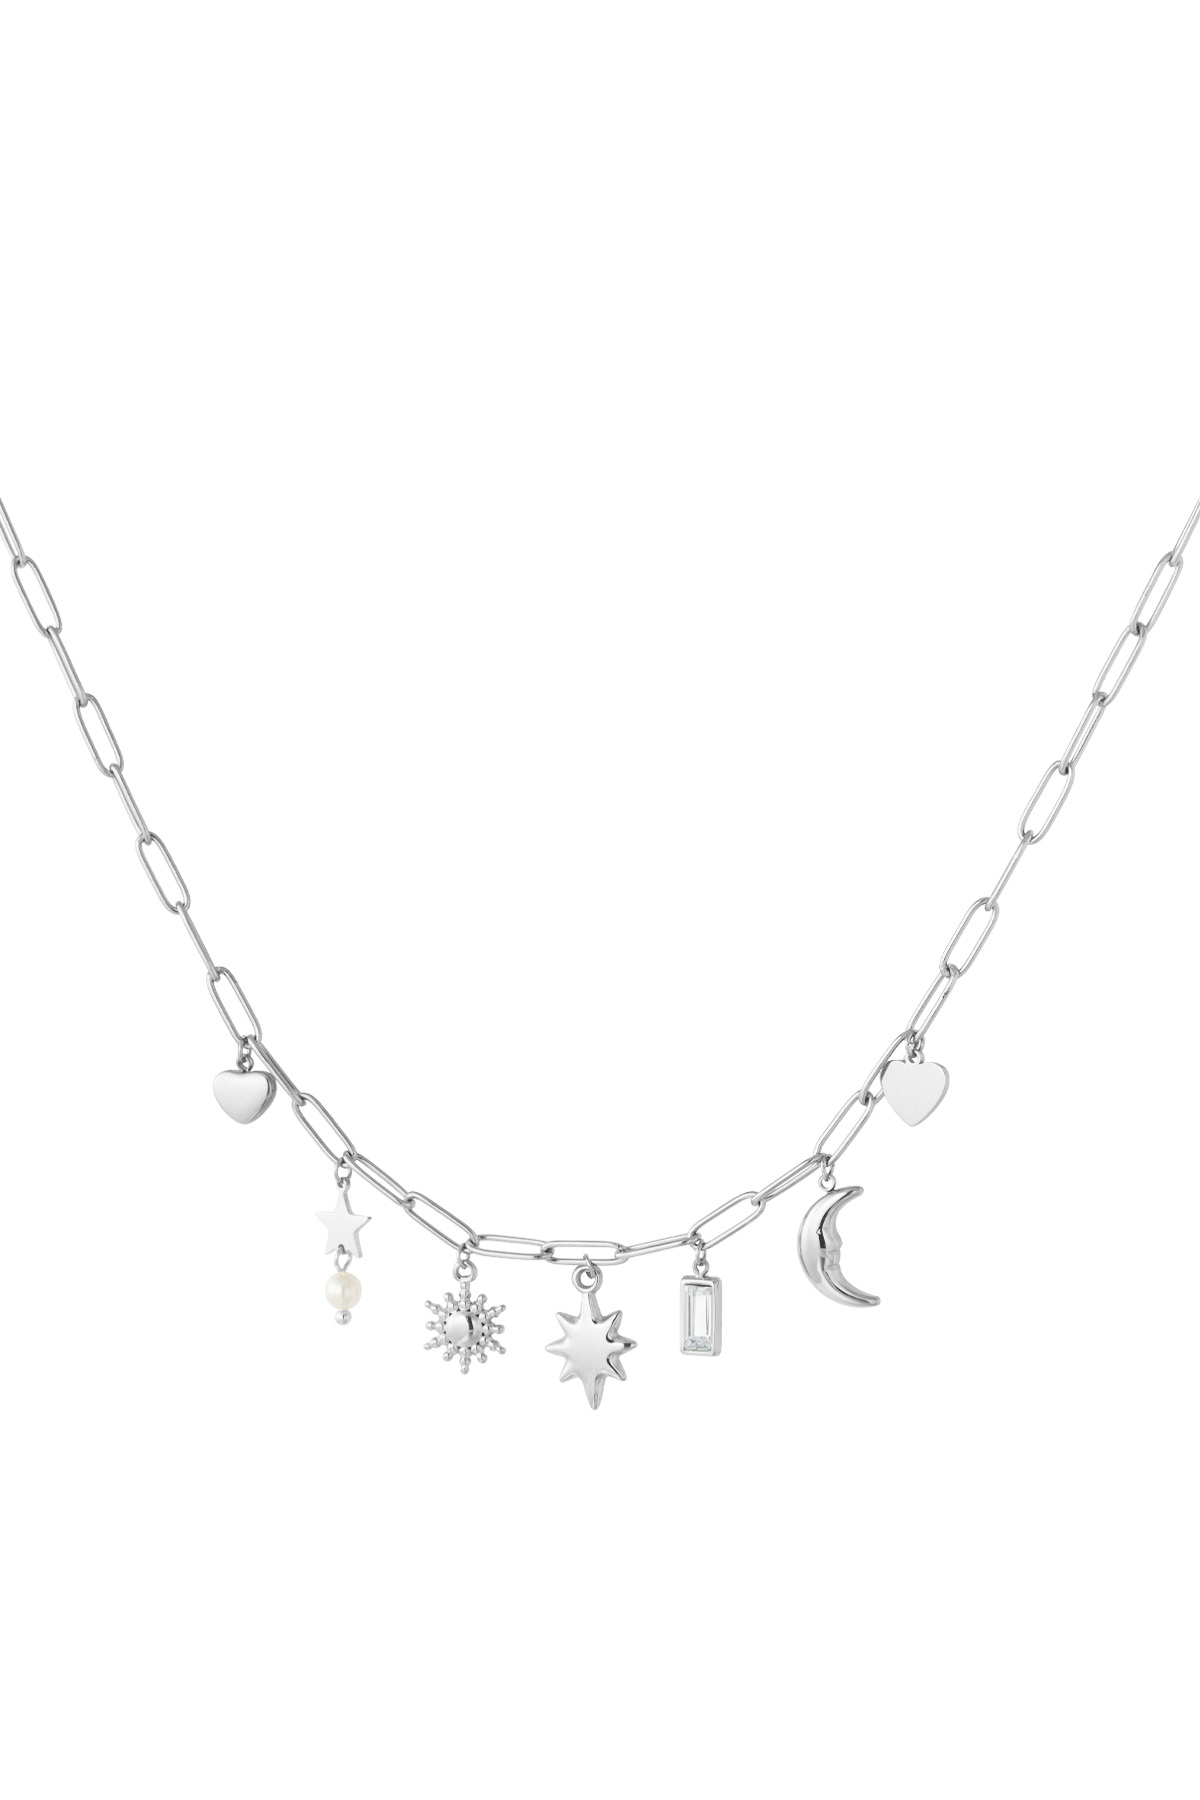 Tag- und Nacht-Charm-Halskette – Silber h5 